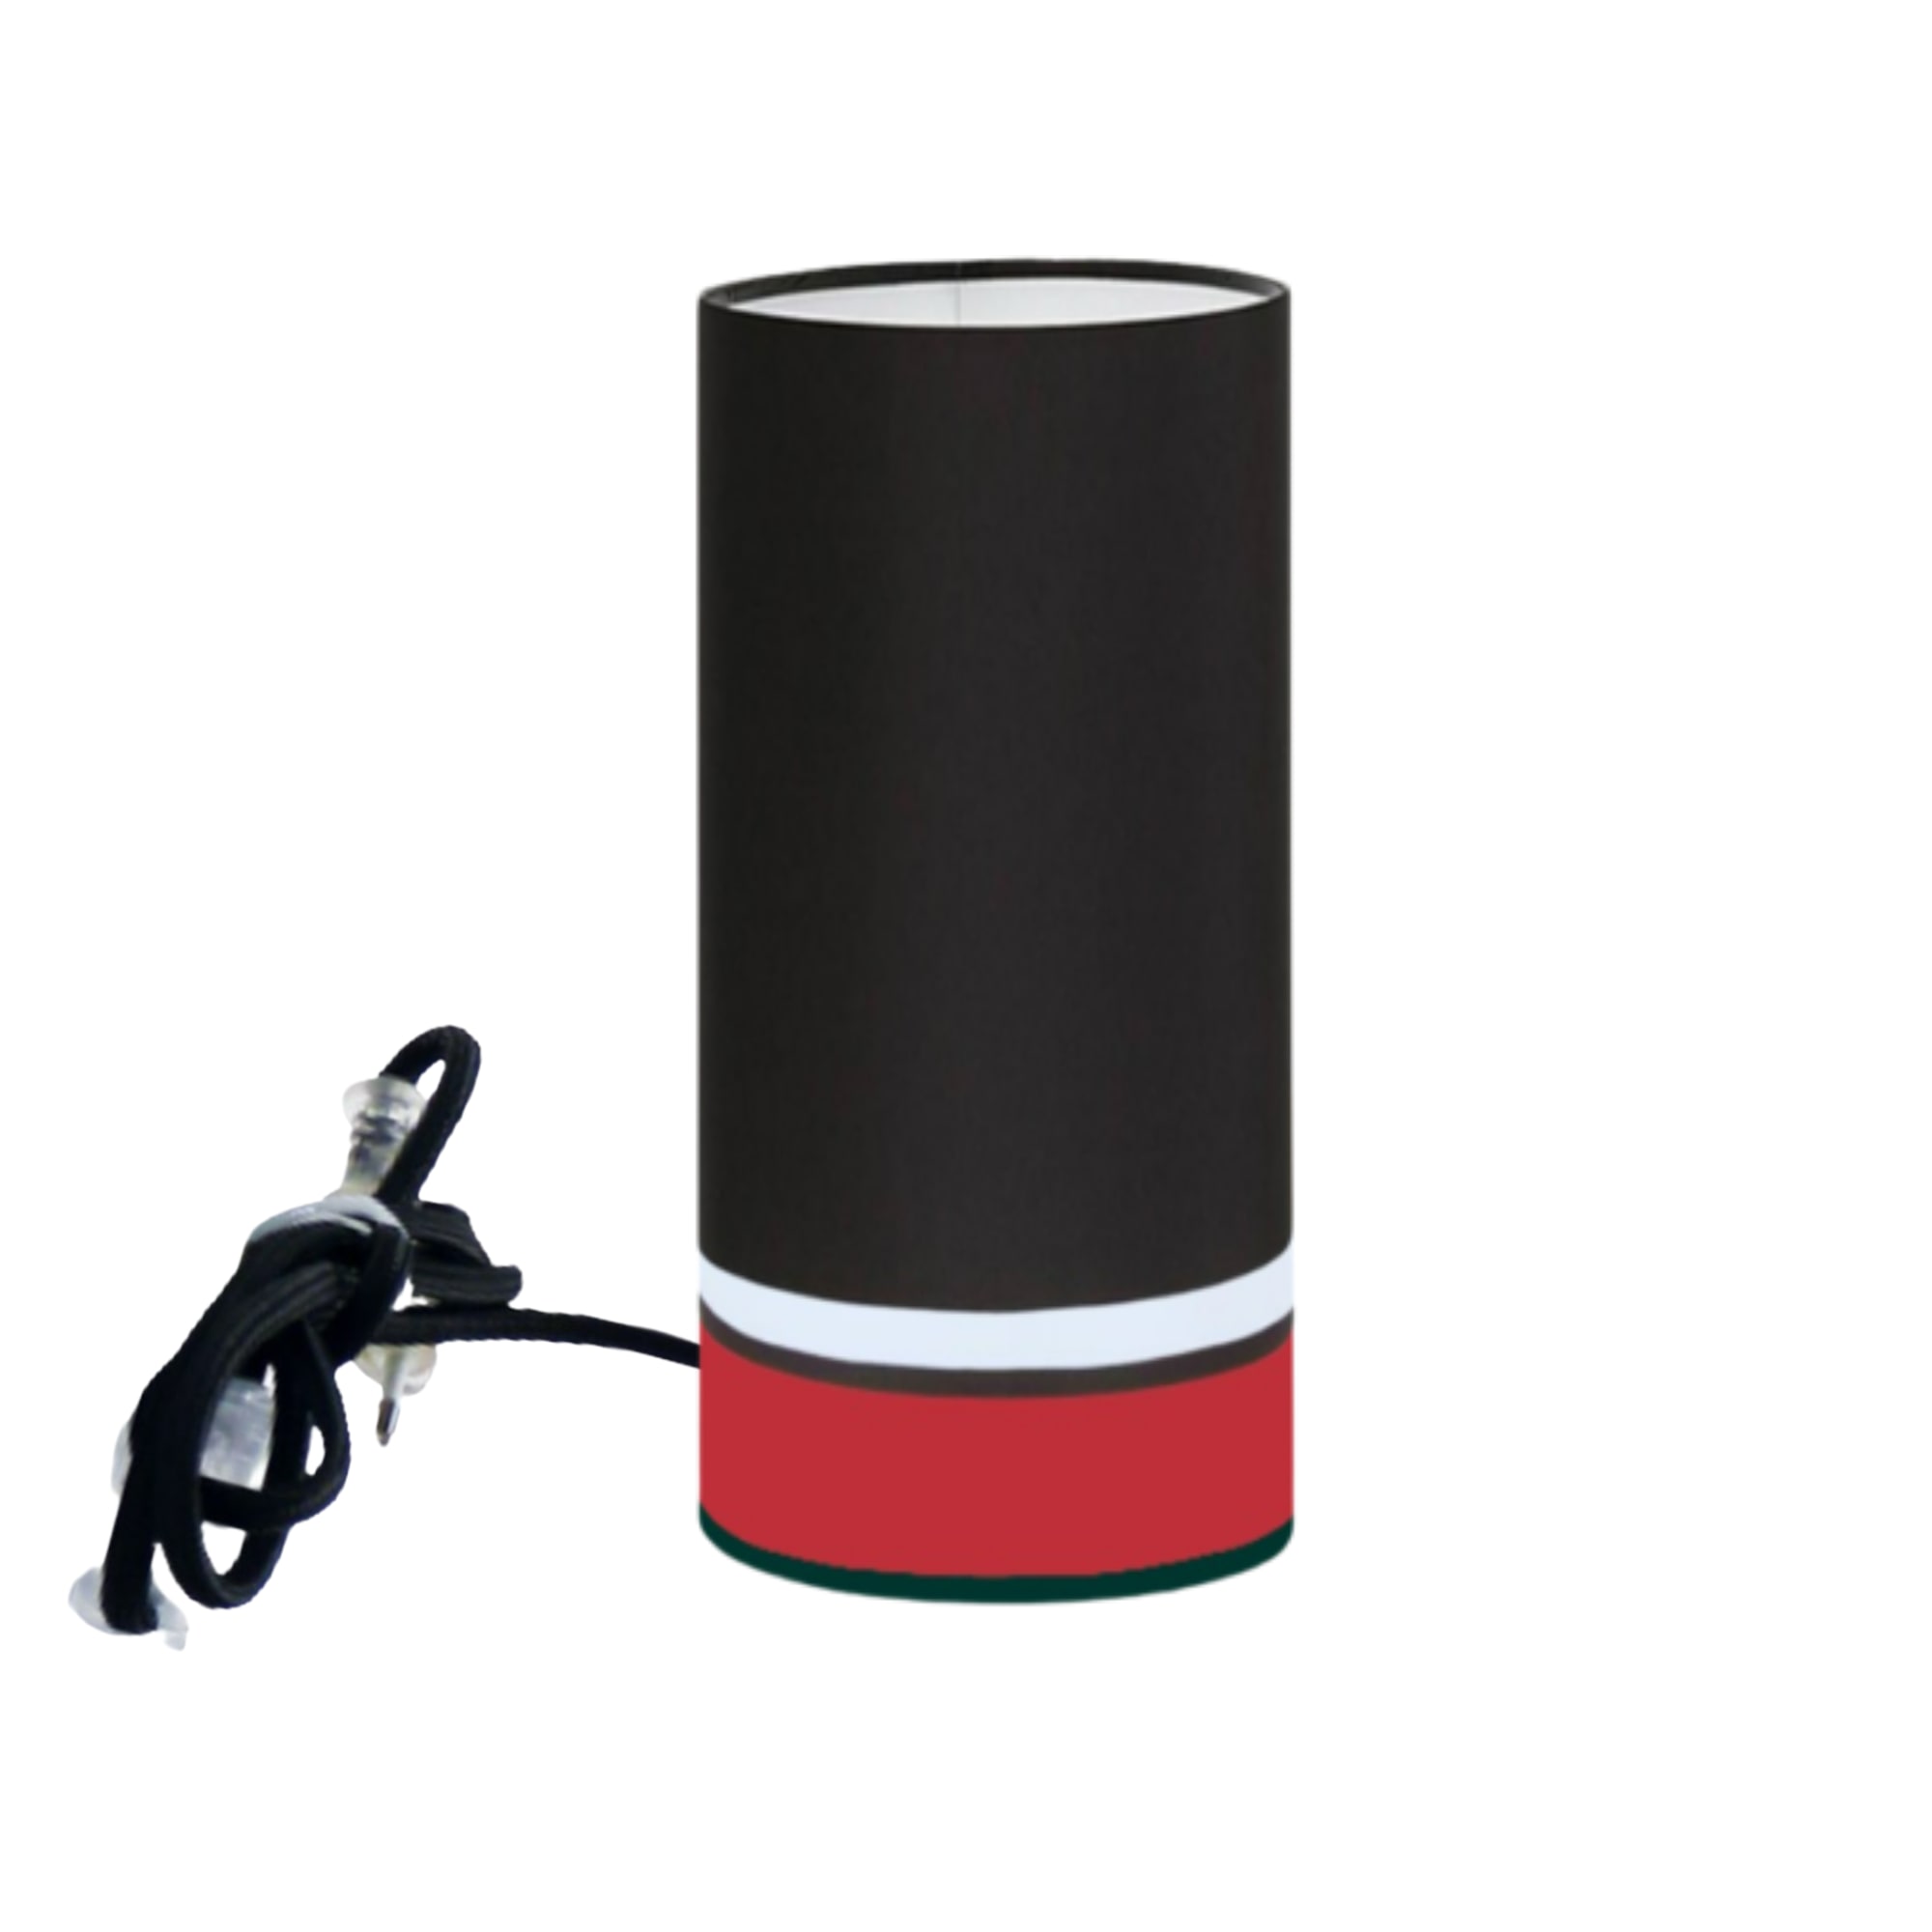 Kauze Luminaires Lampe à poser couleur noir et rouge Ø 15cm x H45cm